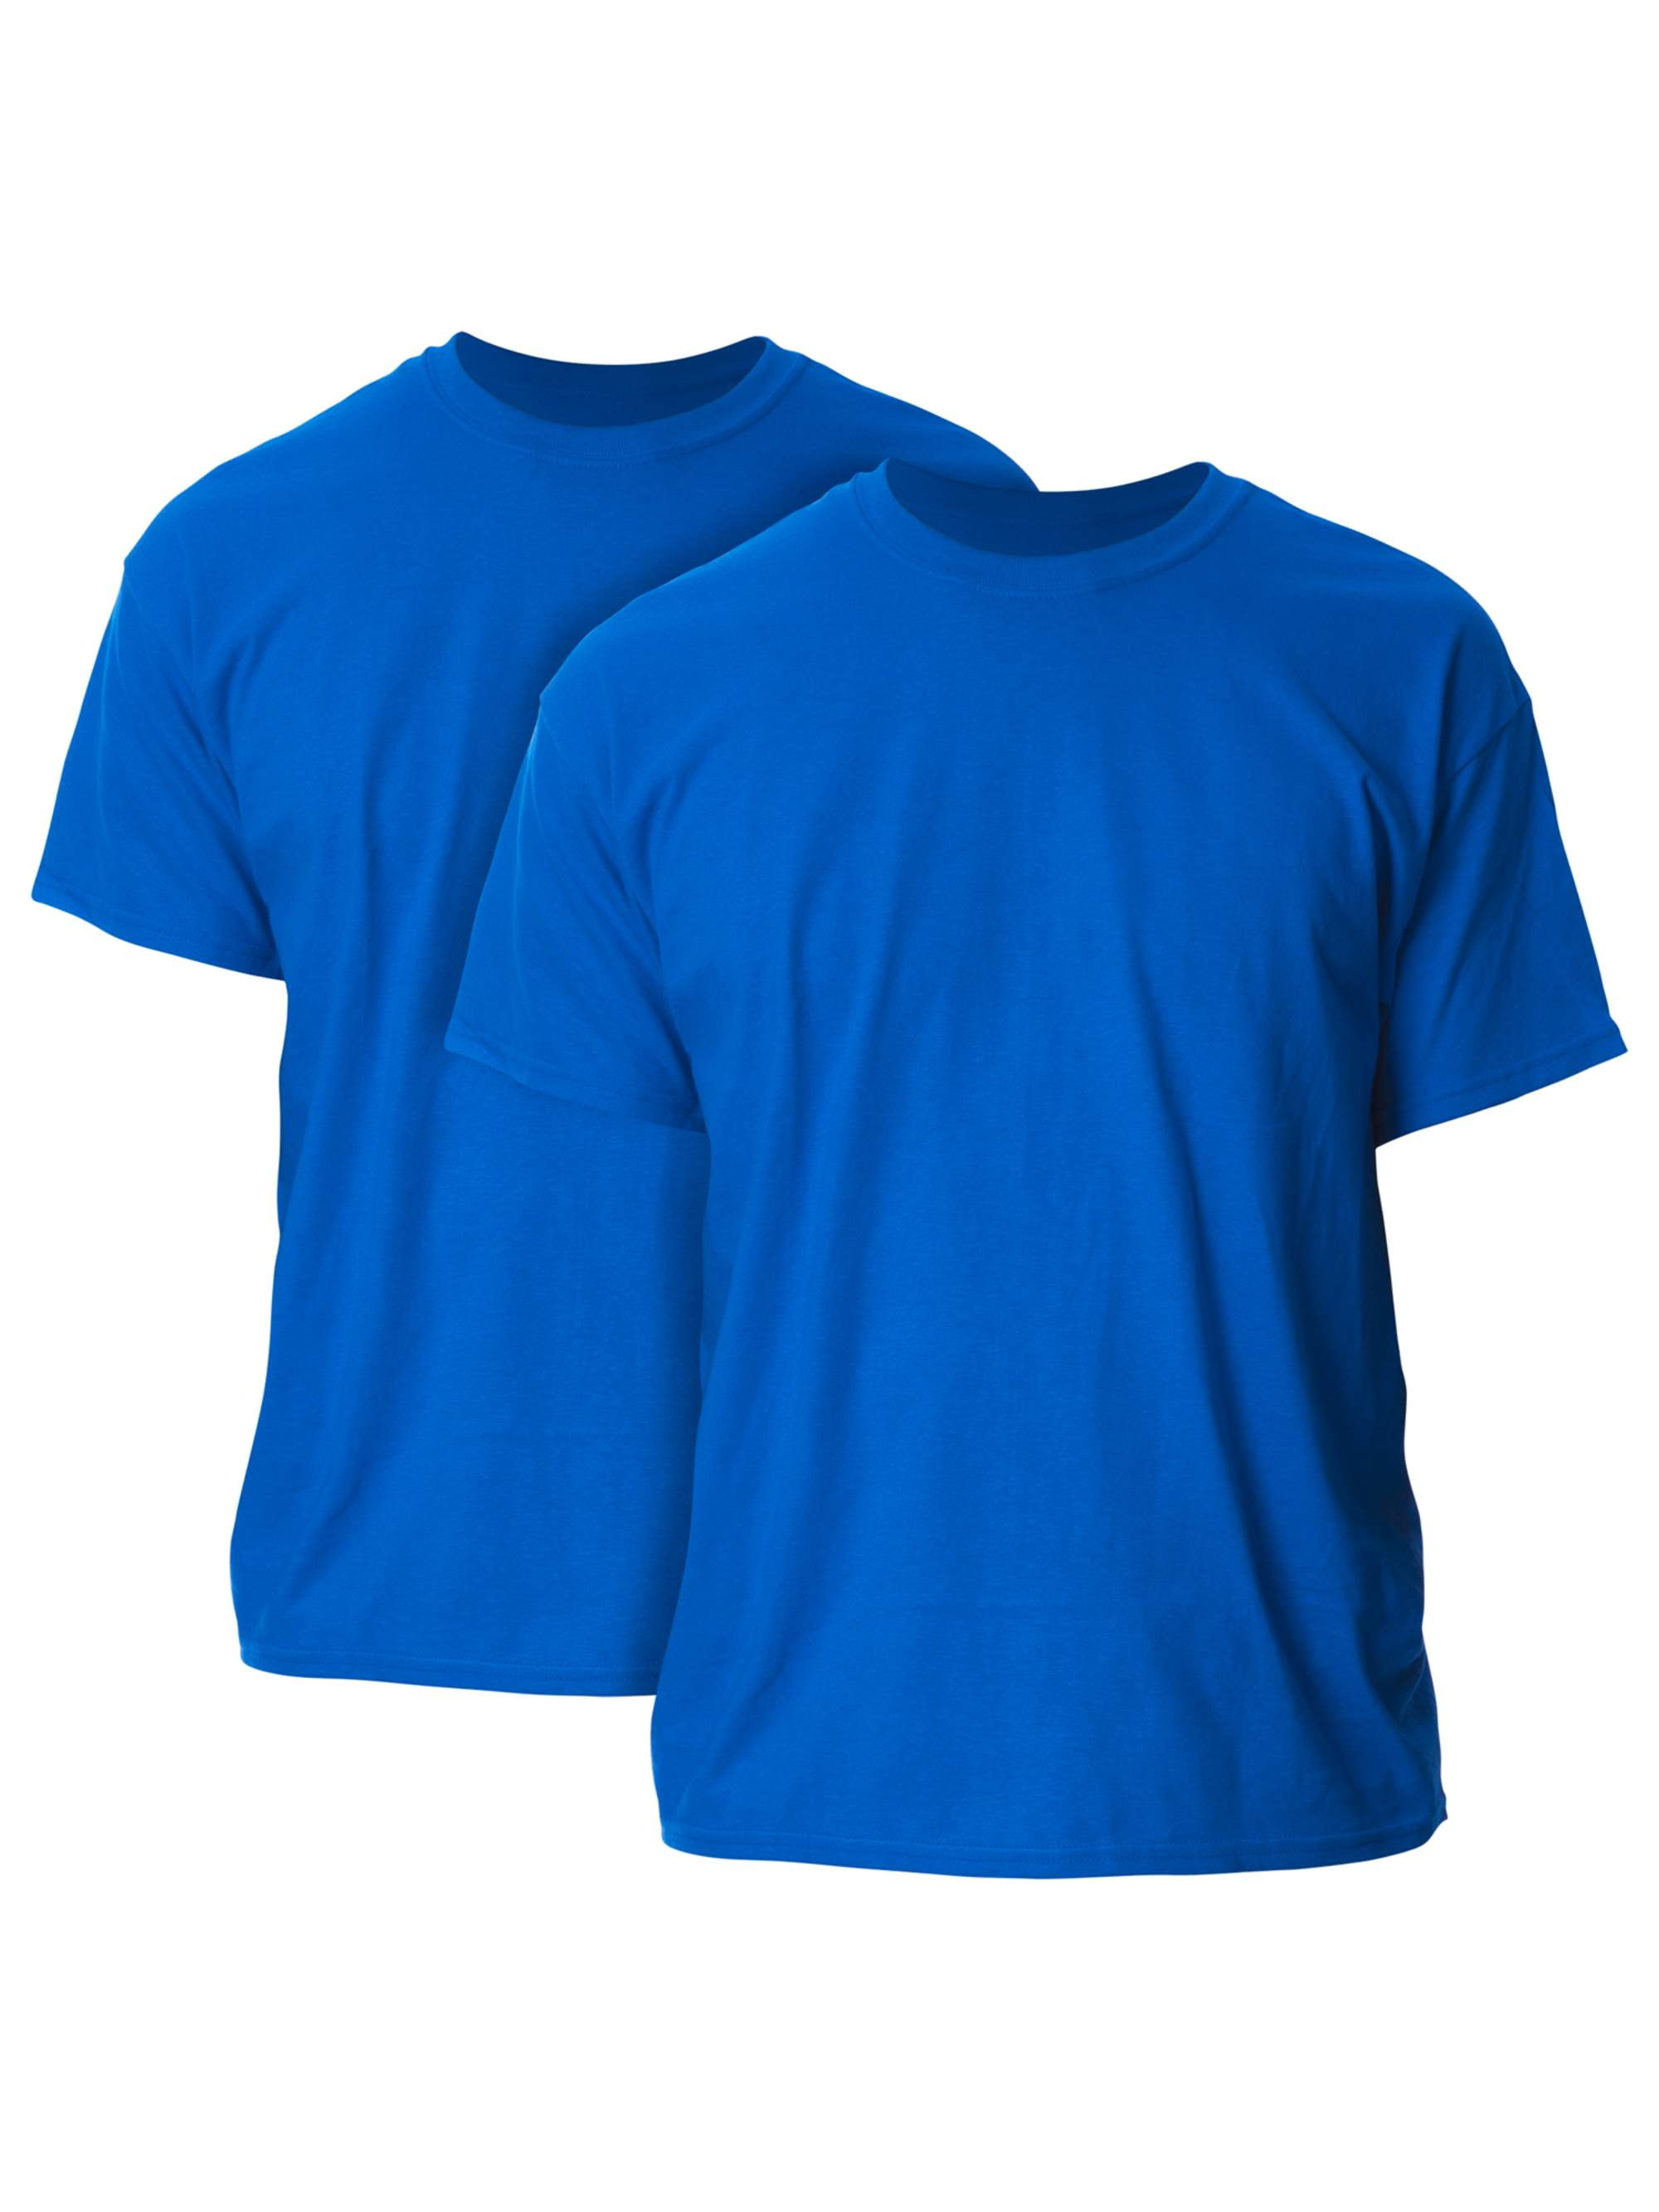 S size shirt T-Shirt for Men XXL size shirt L size shirt M size shirt Dog Style T- shirt XL size shirt